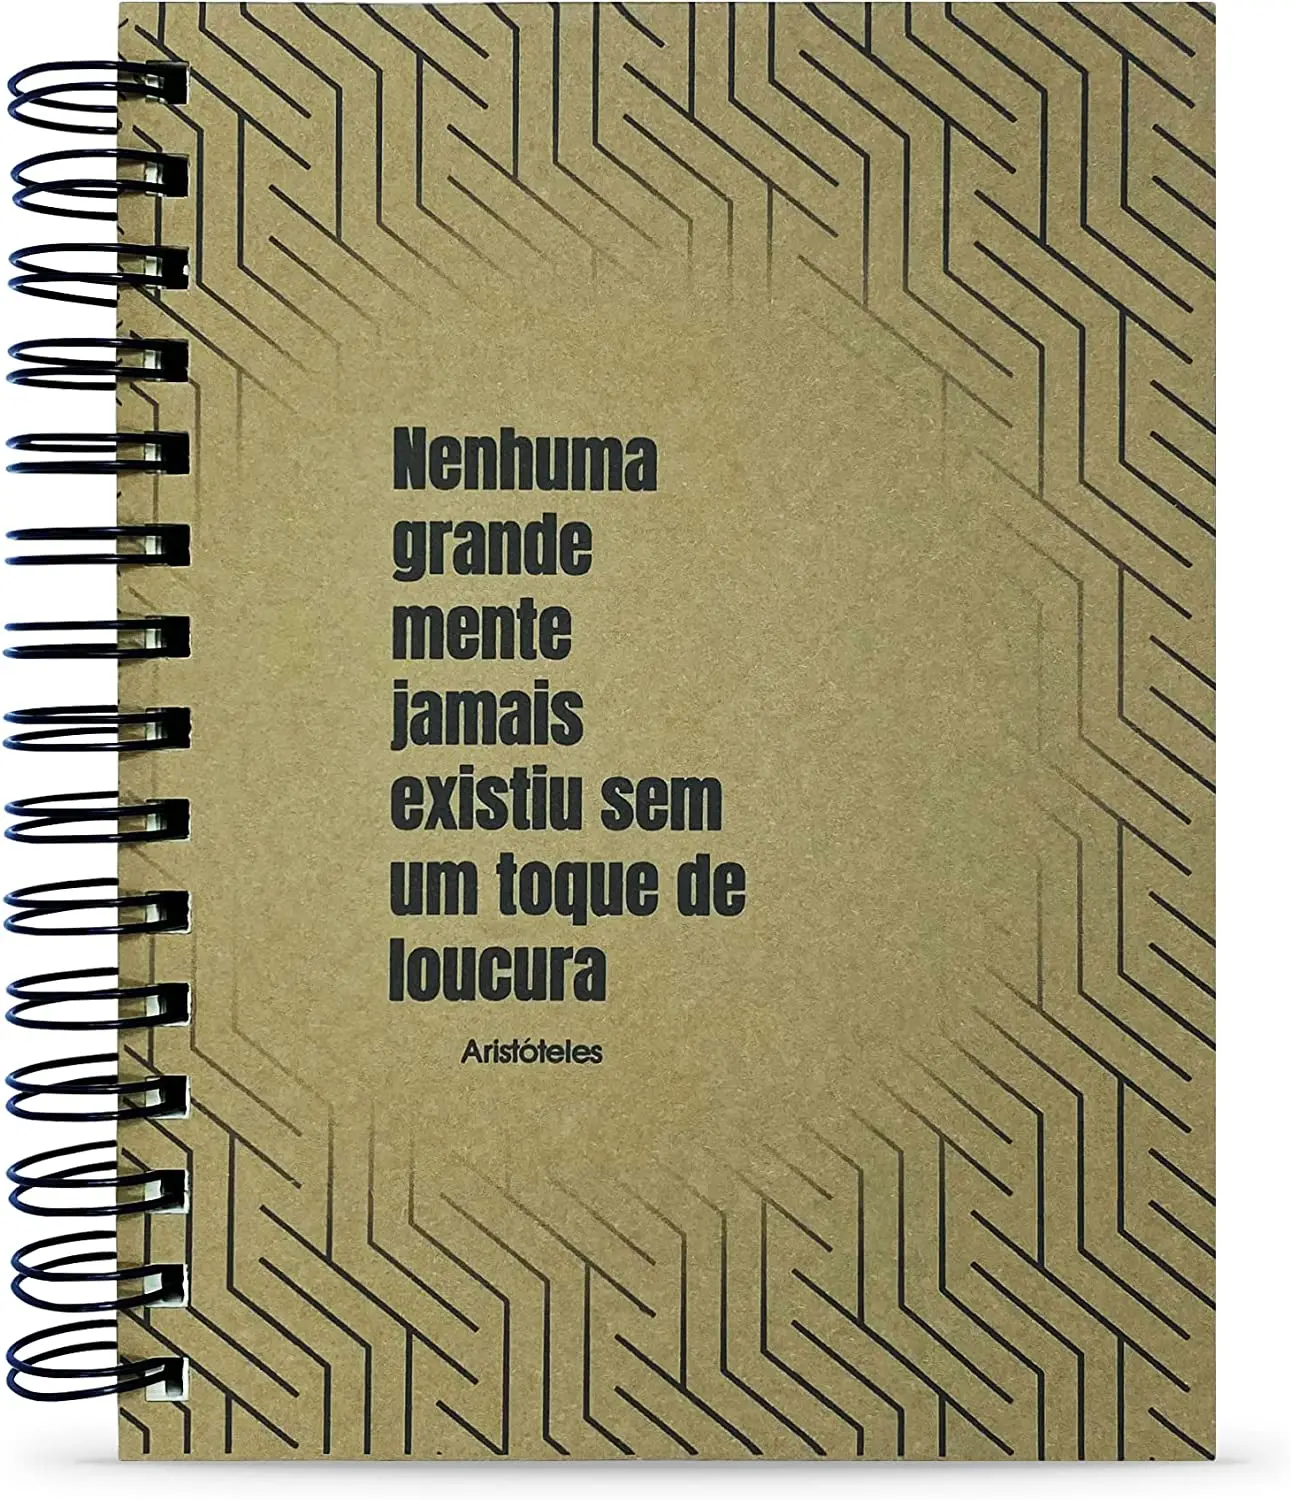 

2023 Caderno Aristóteles "Nenhuma Grande Mente" 125 Fls. Capa Dura Tamanho 15x21cm notebooks com frete grátis